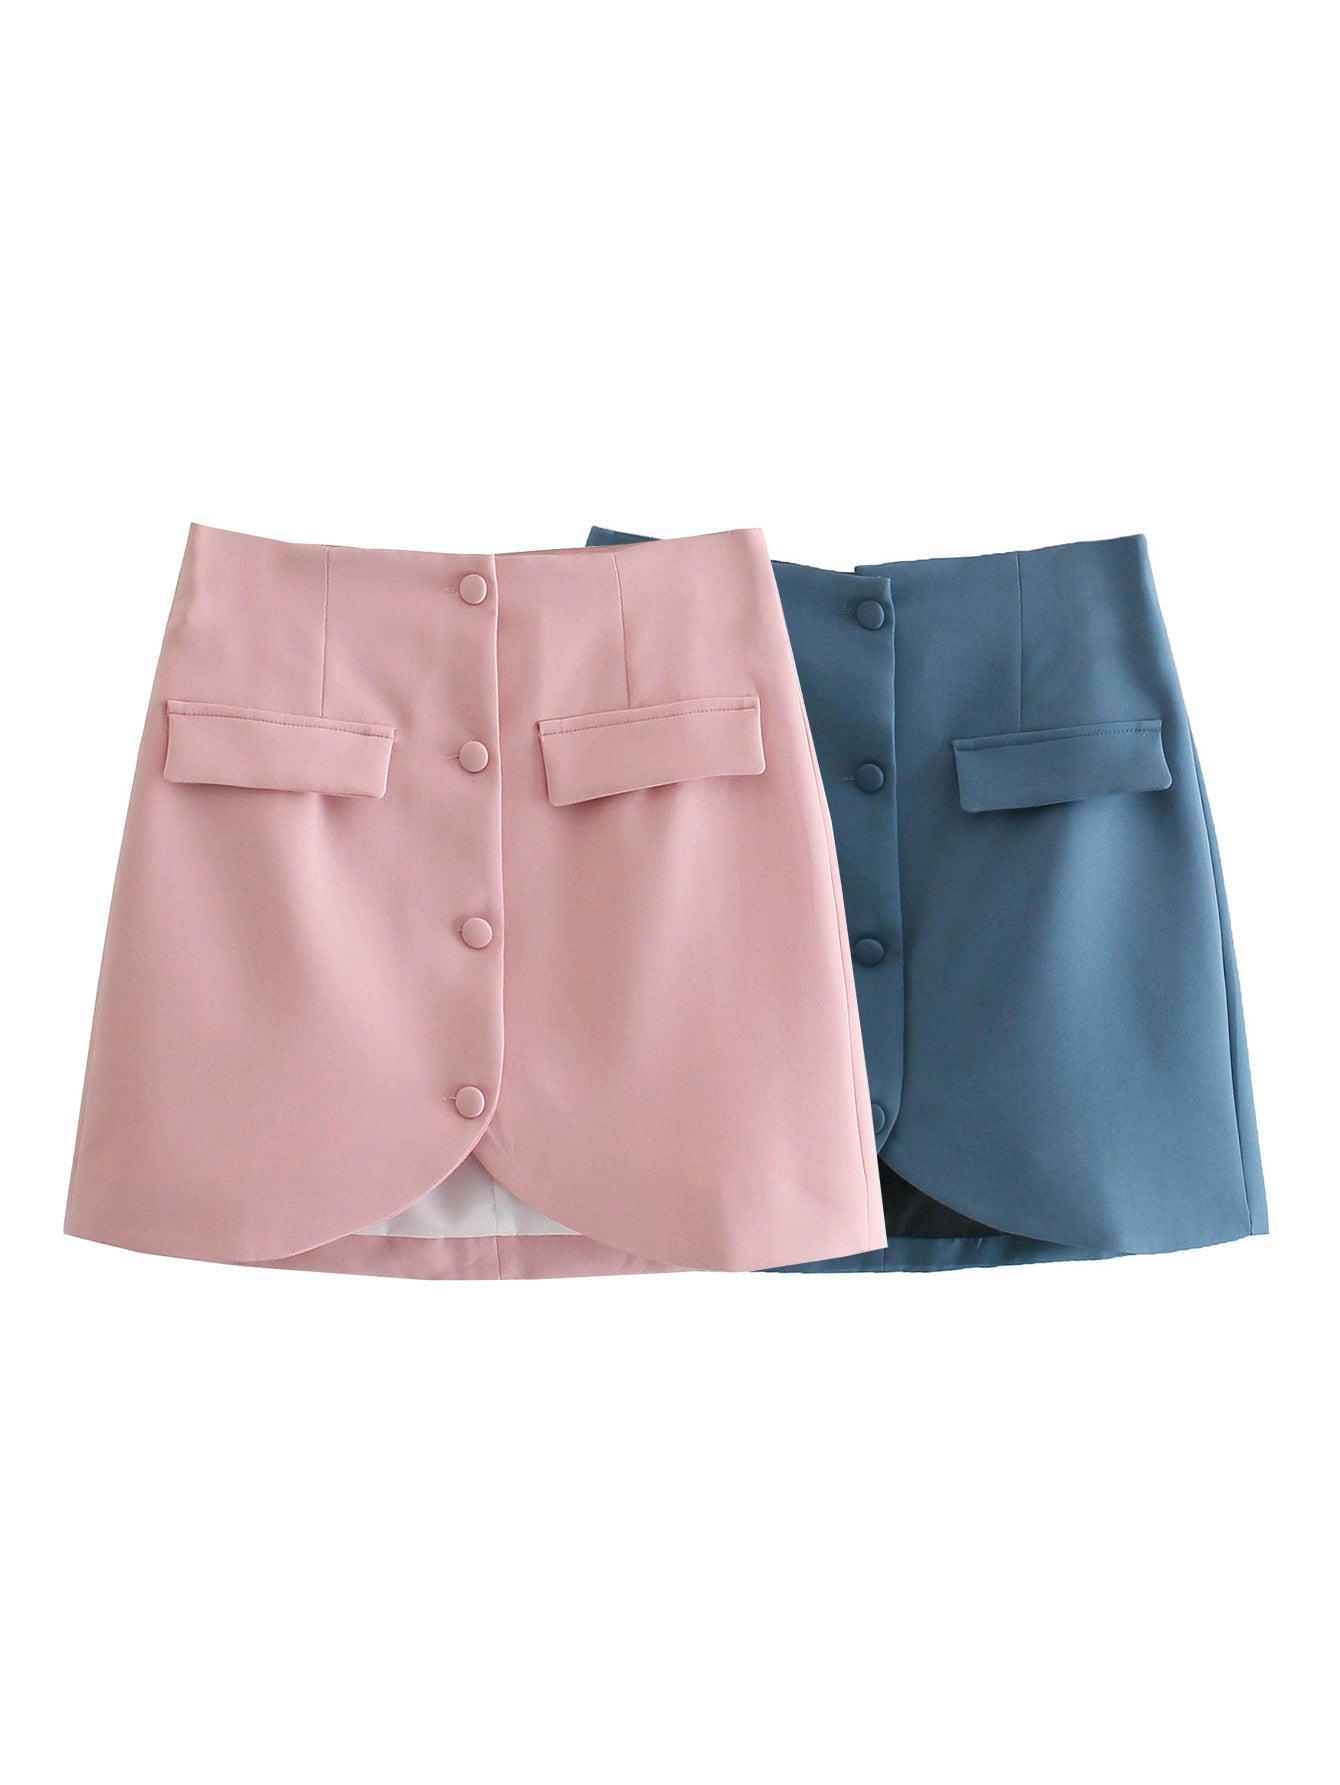 Autumn Women Clothing Pocket Decorative Single-Breasted Sheath Skirt